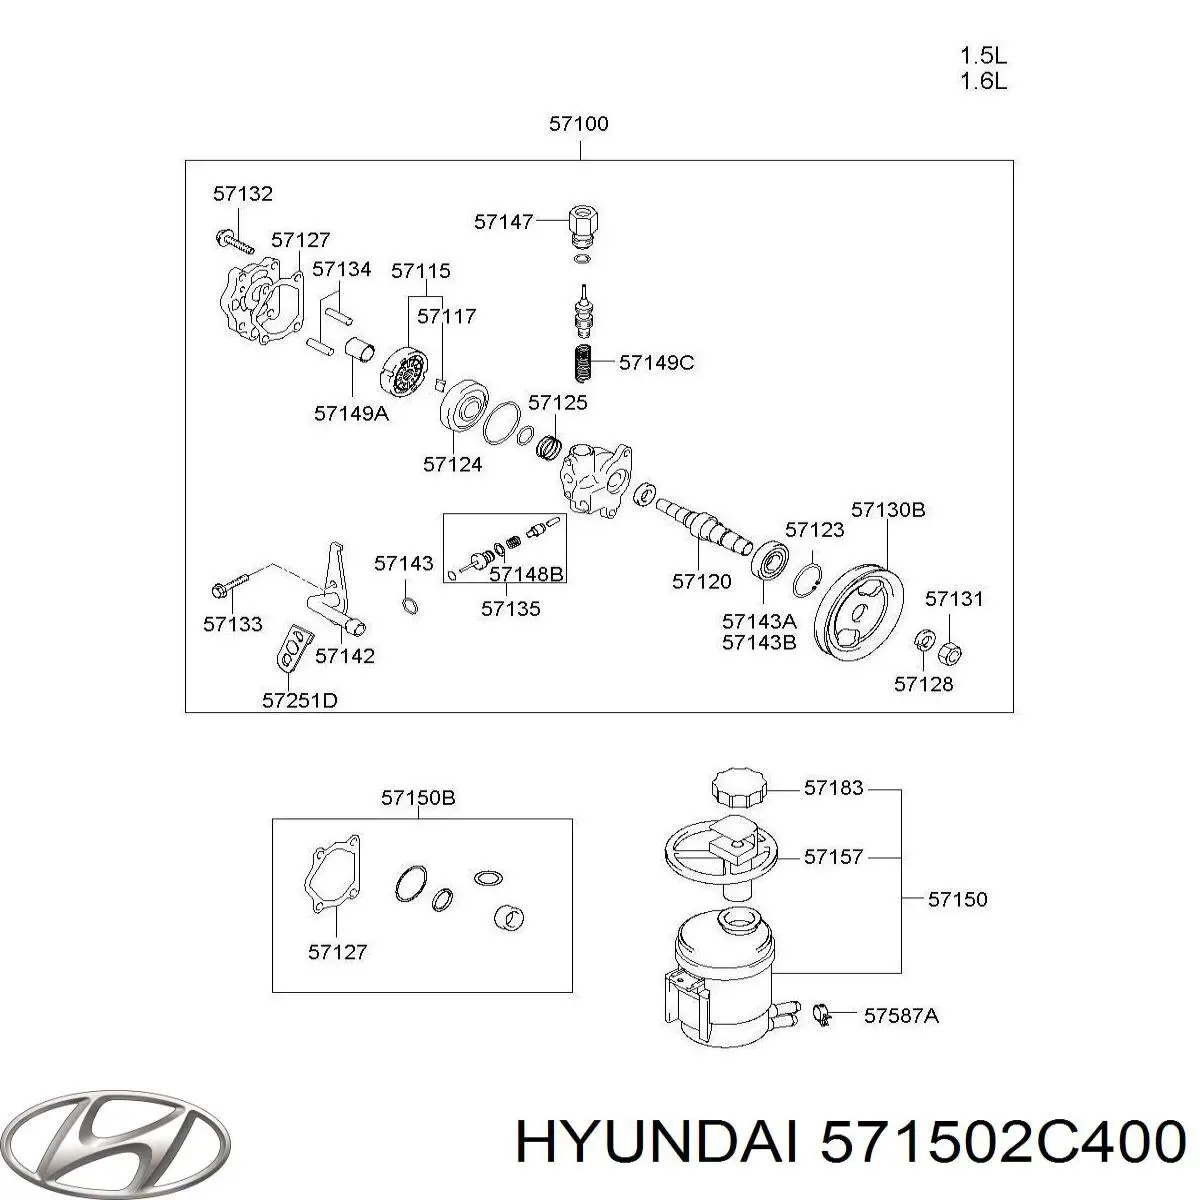 571502C400 Hyundai/Kia depósito de bomba de dirección hidráulica